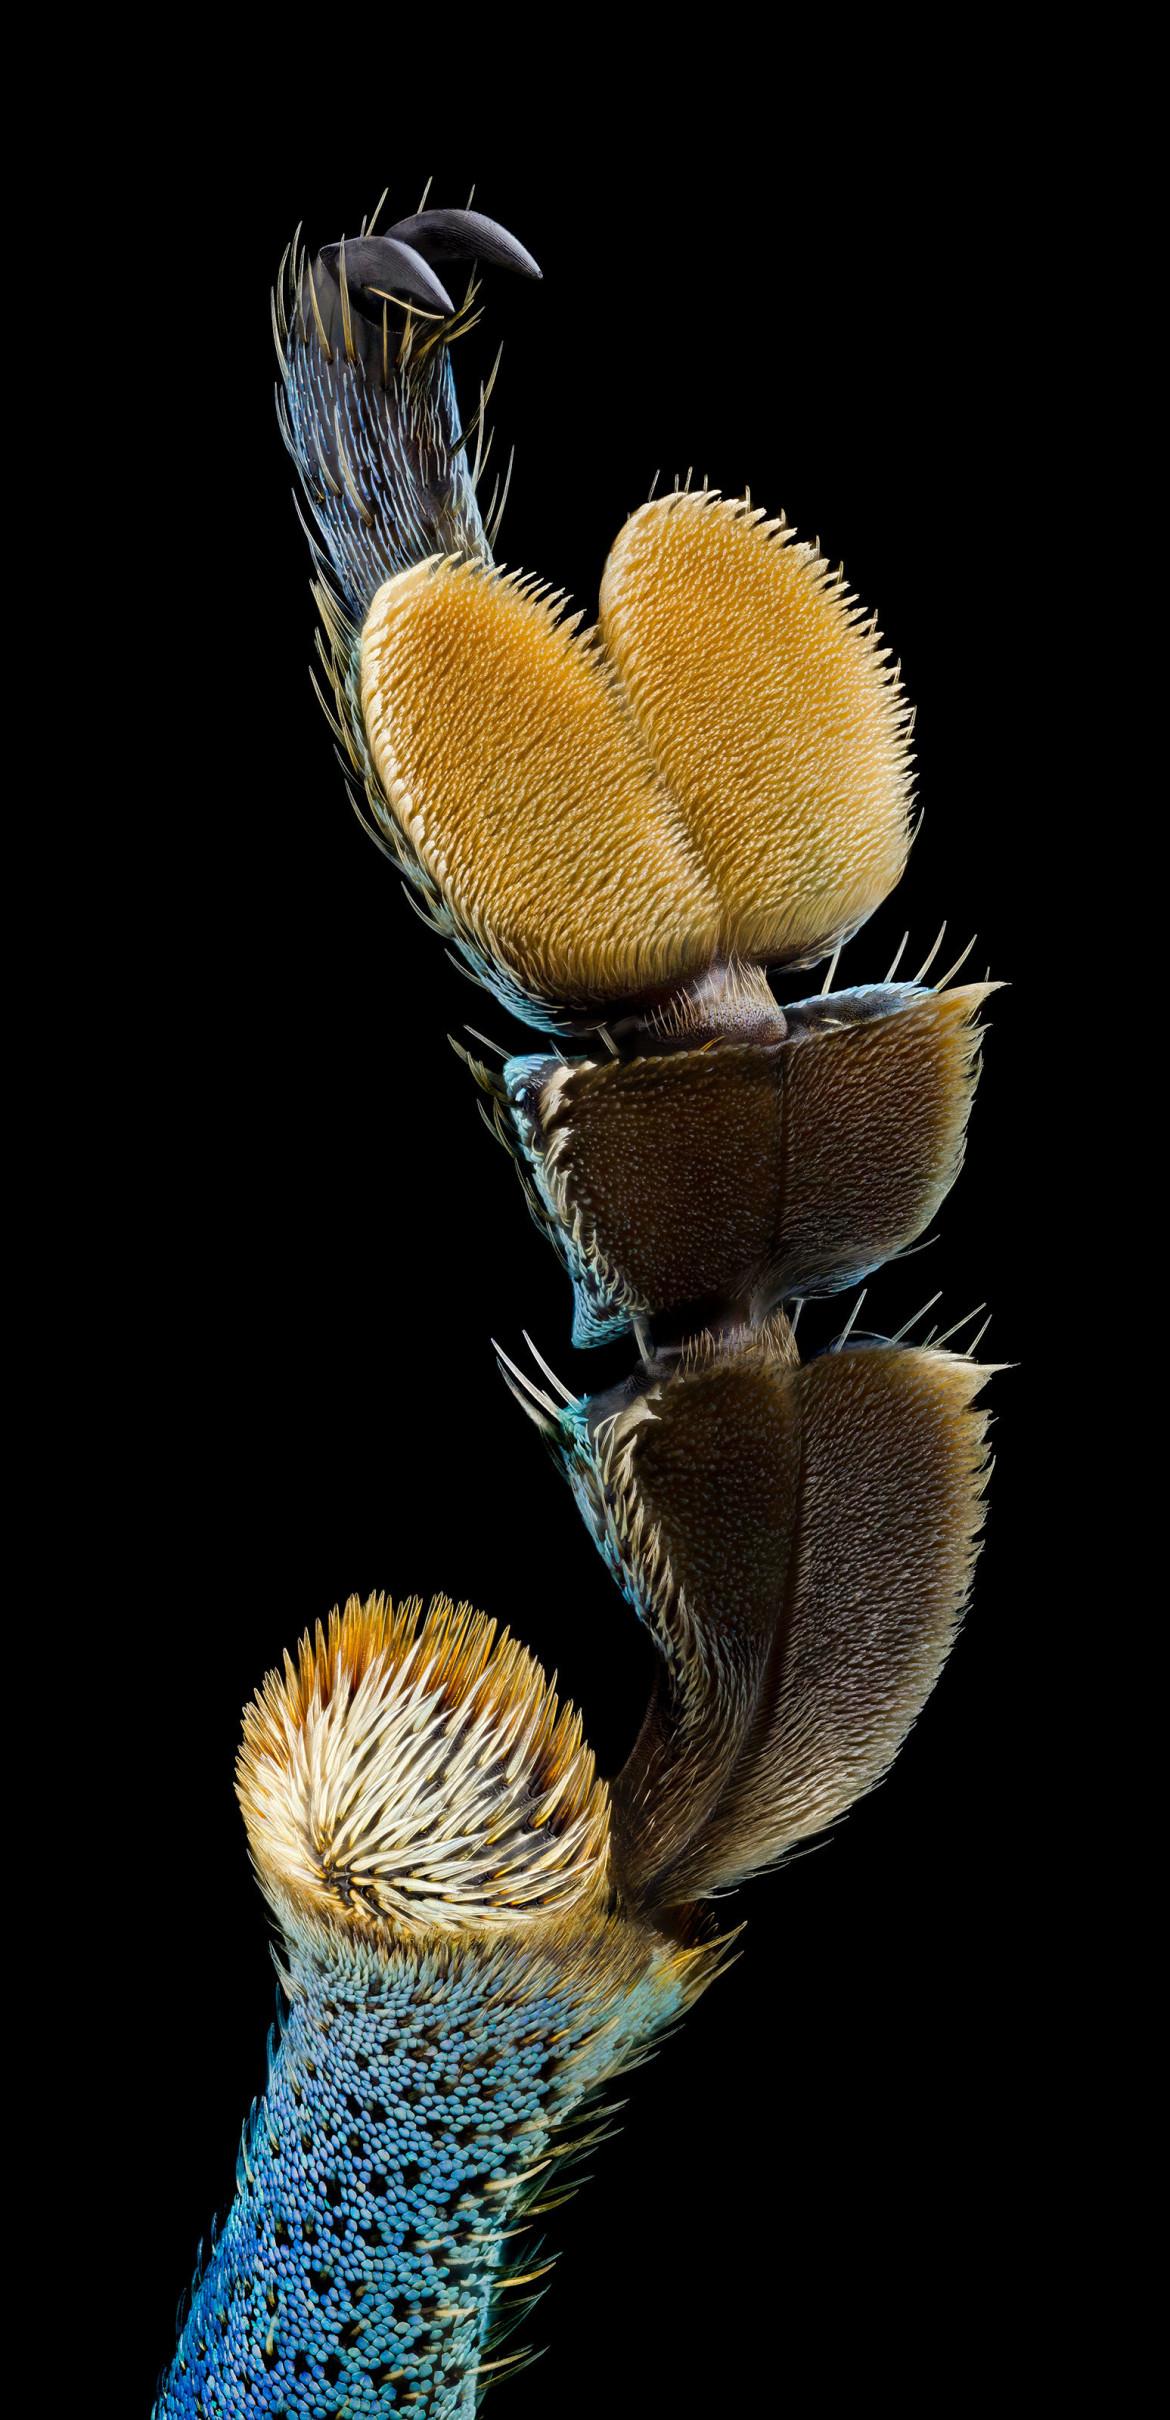 fot. Aigars Jukna, odnóże chrząszcza, wyróżnienie w konkursie Nikon's Small World 2020